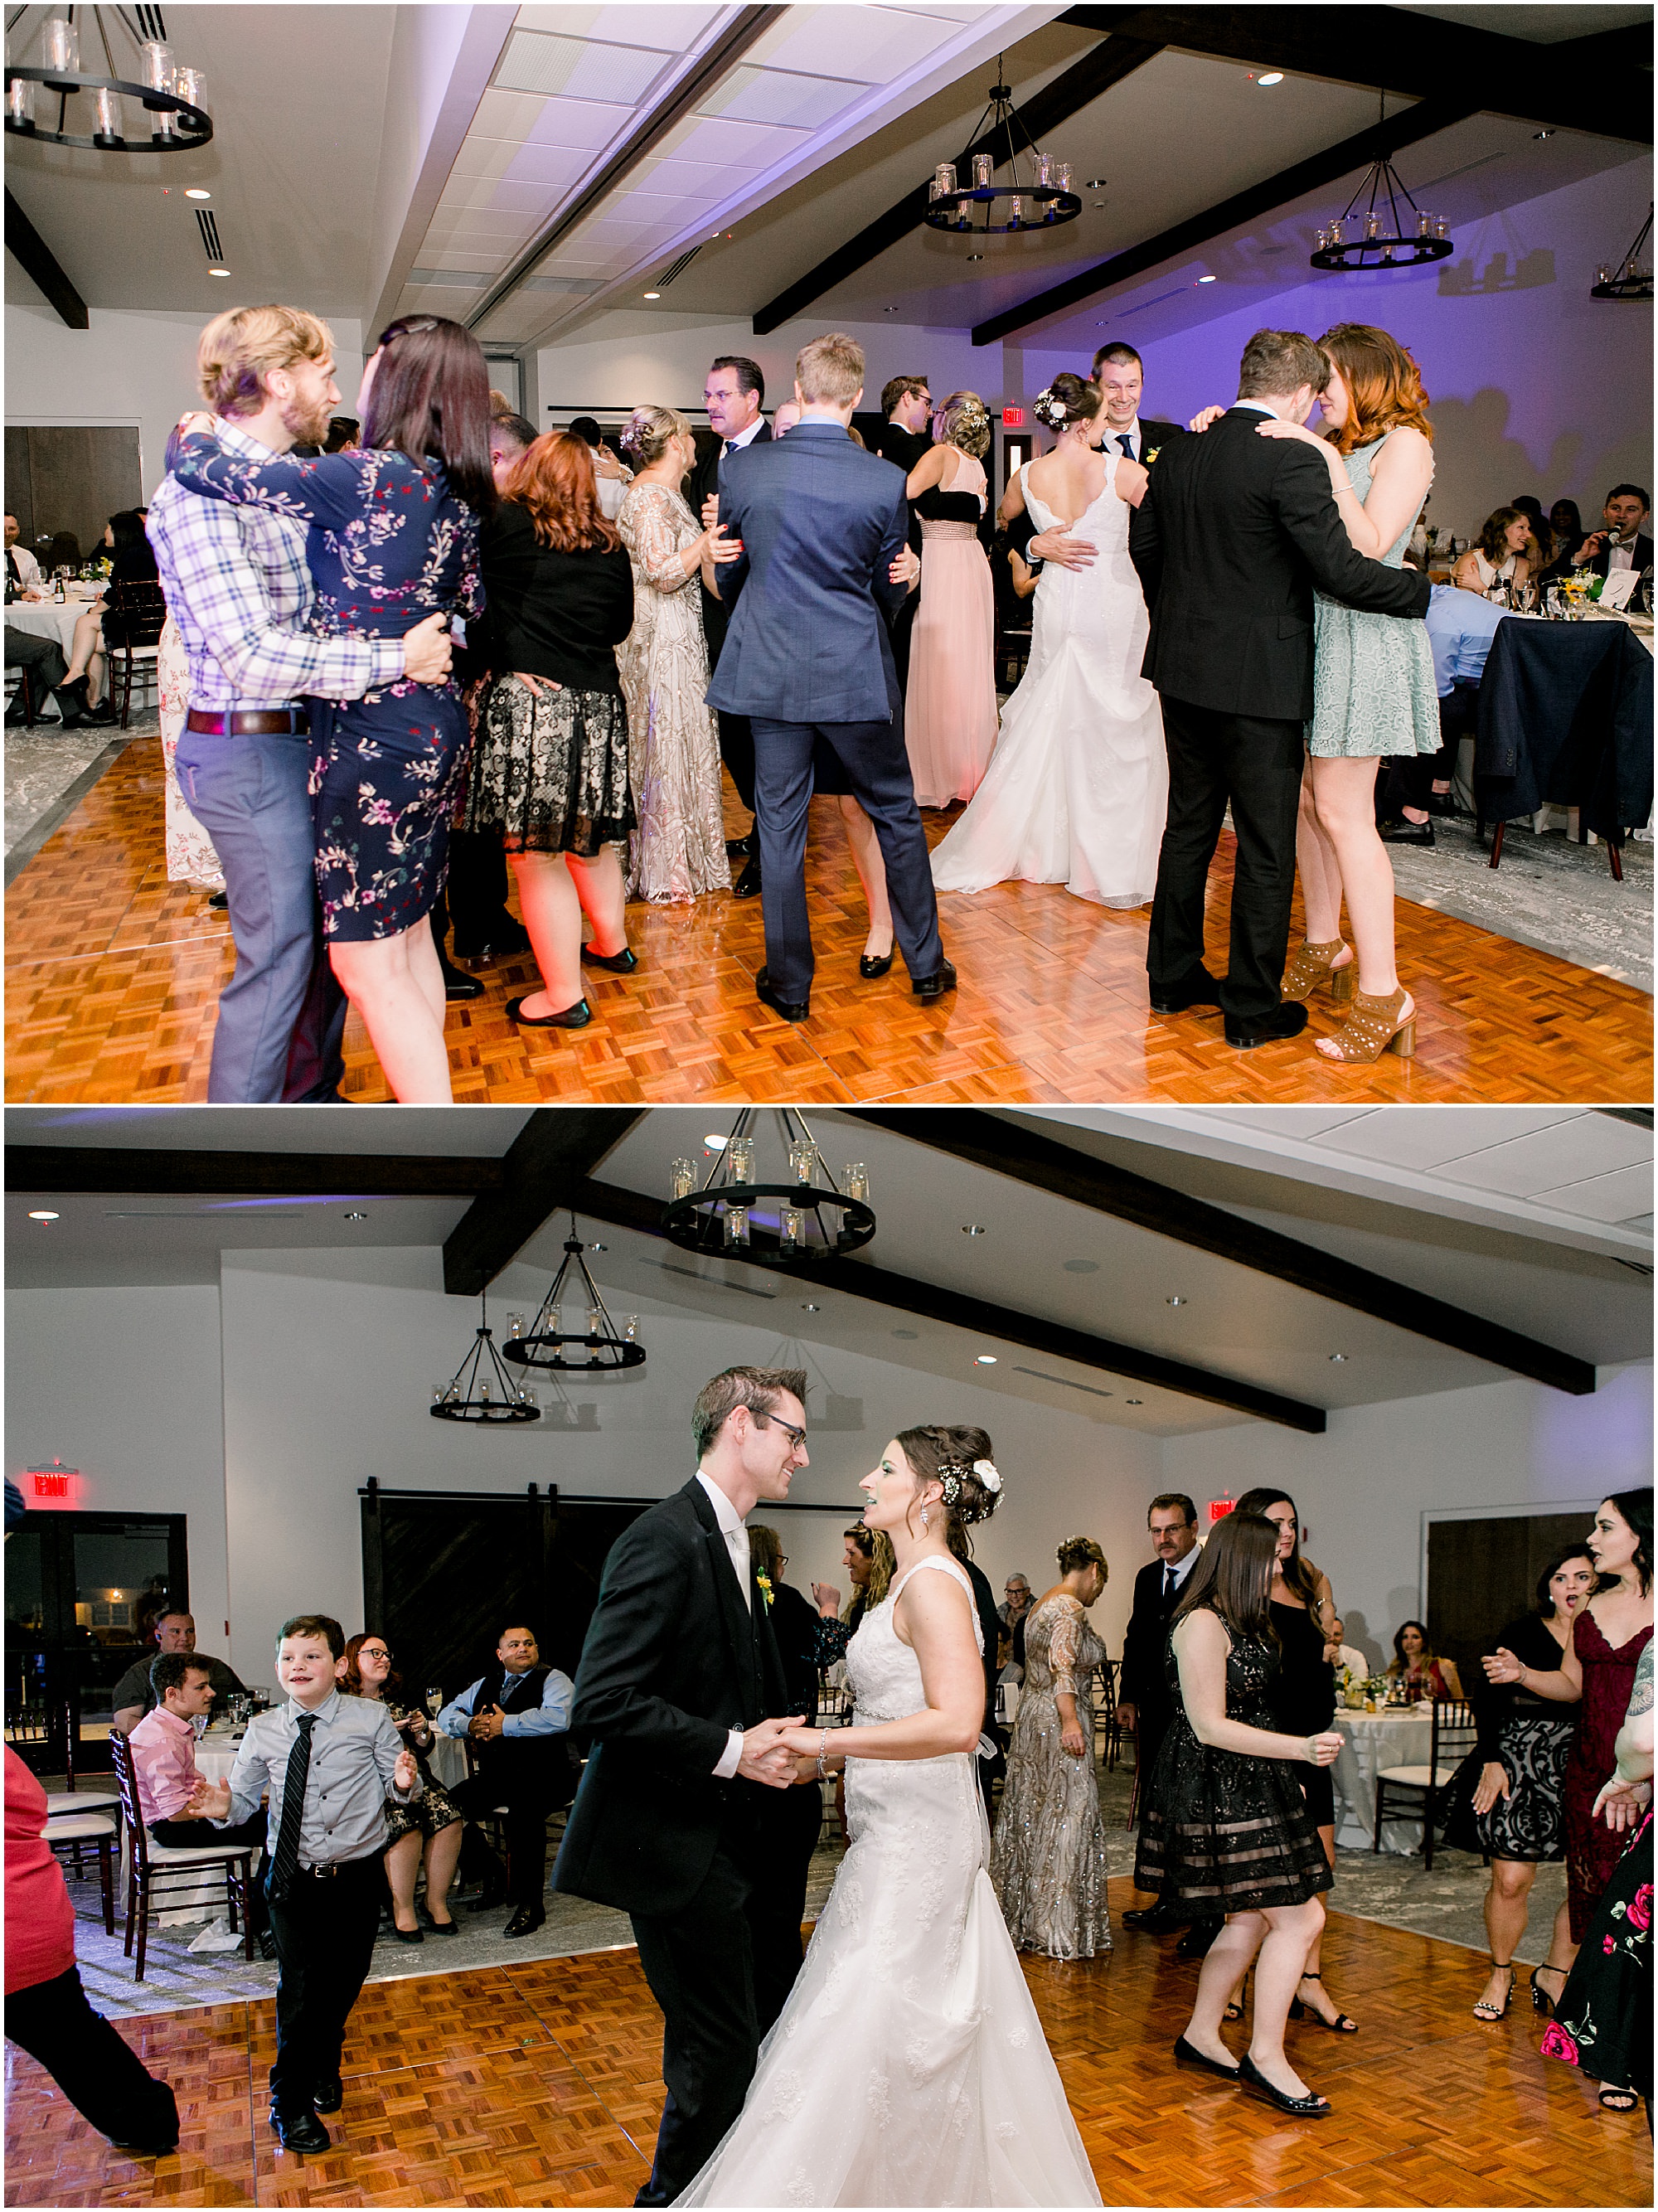 Guests dancing at wedding.